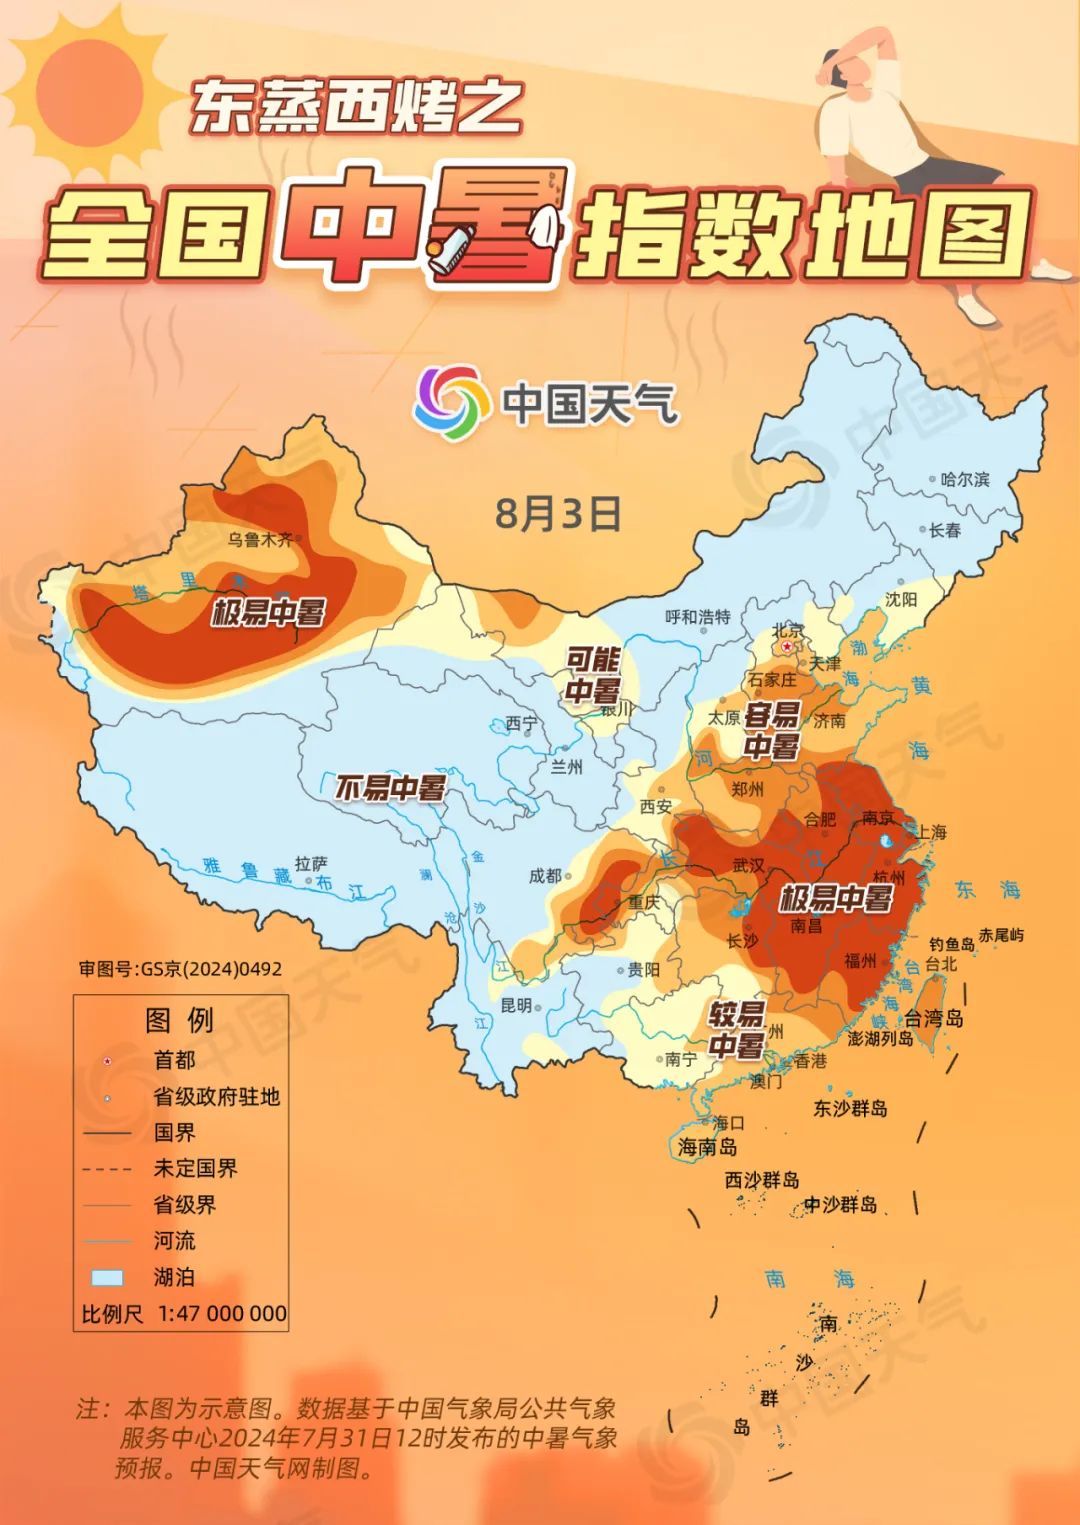 据中国天气网预报,未来7天,上海,南京,南昌,福州,长沙,重庆,杭州高温